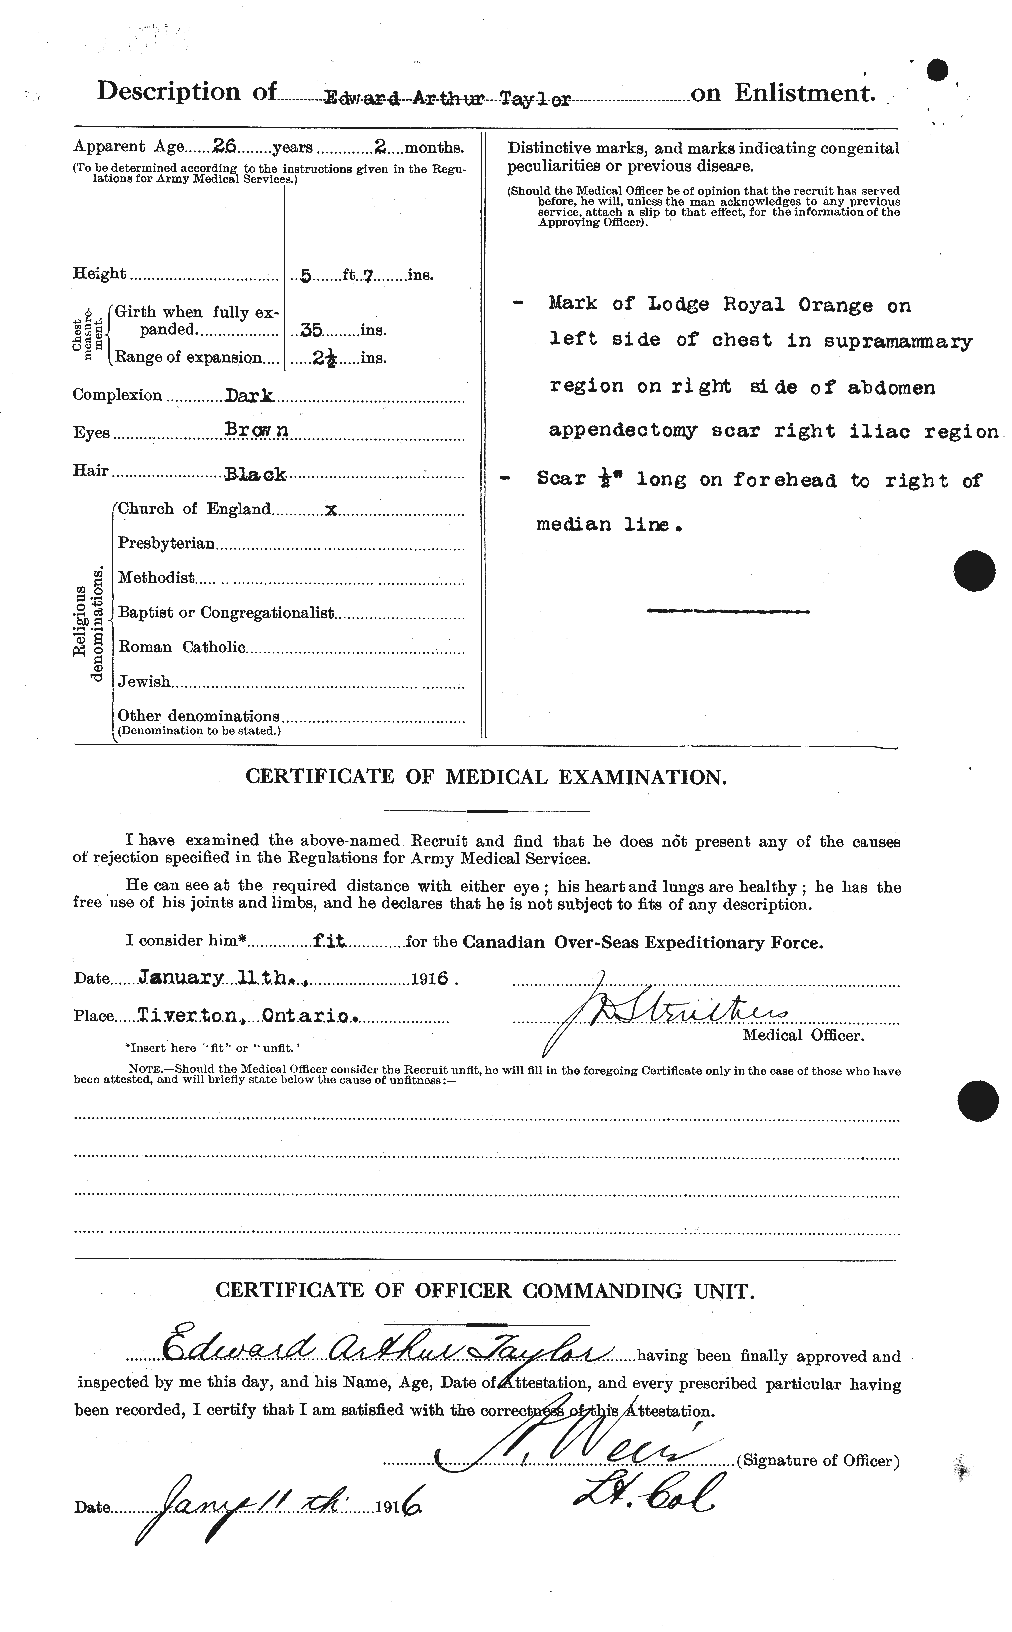 Dossiers du Personnel de la Première Guerre mondiale - CEC 627300b